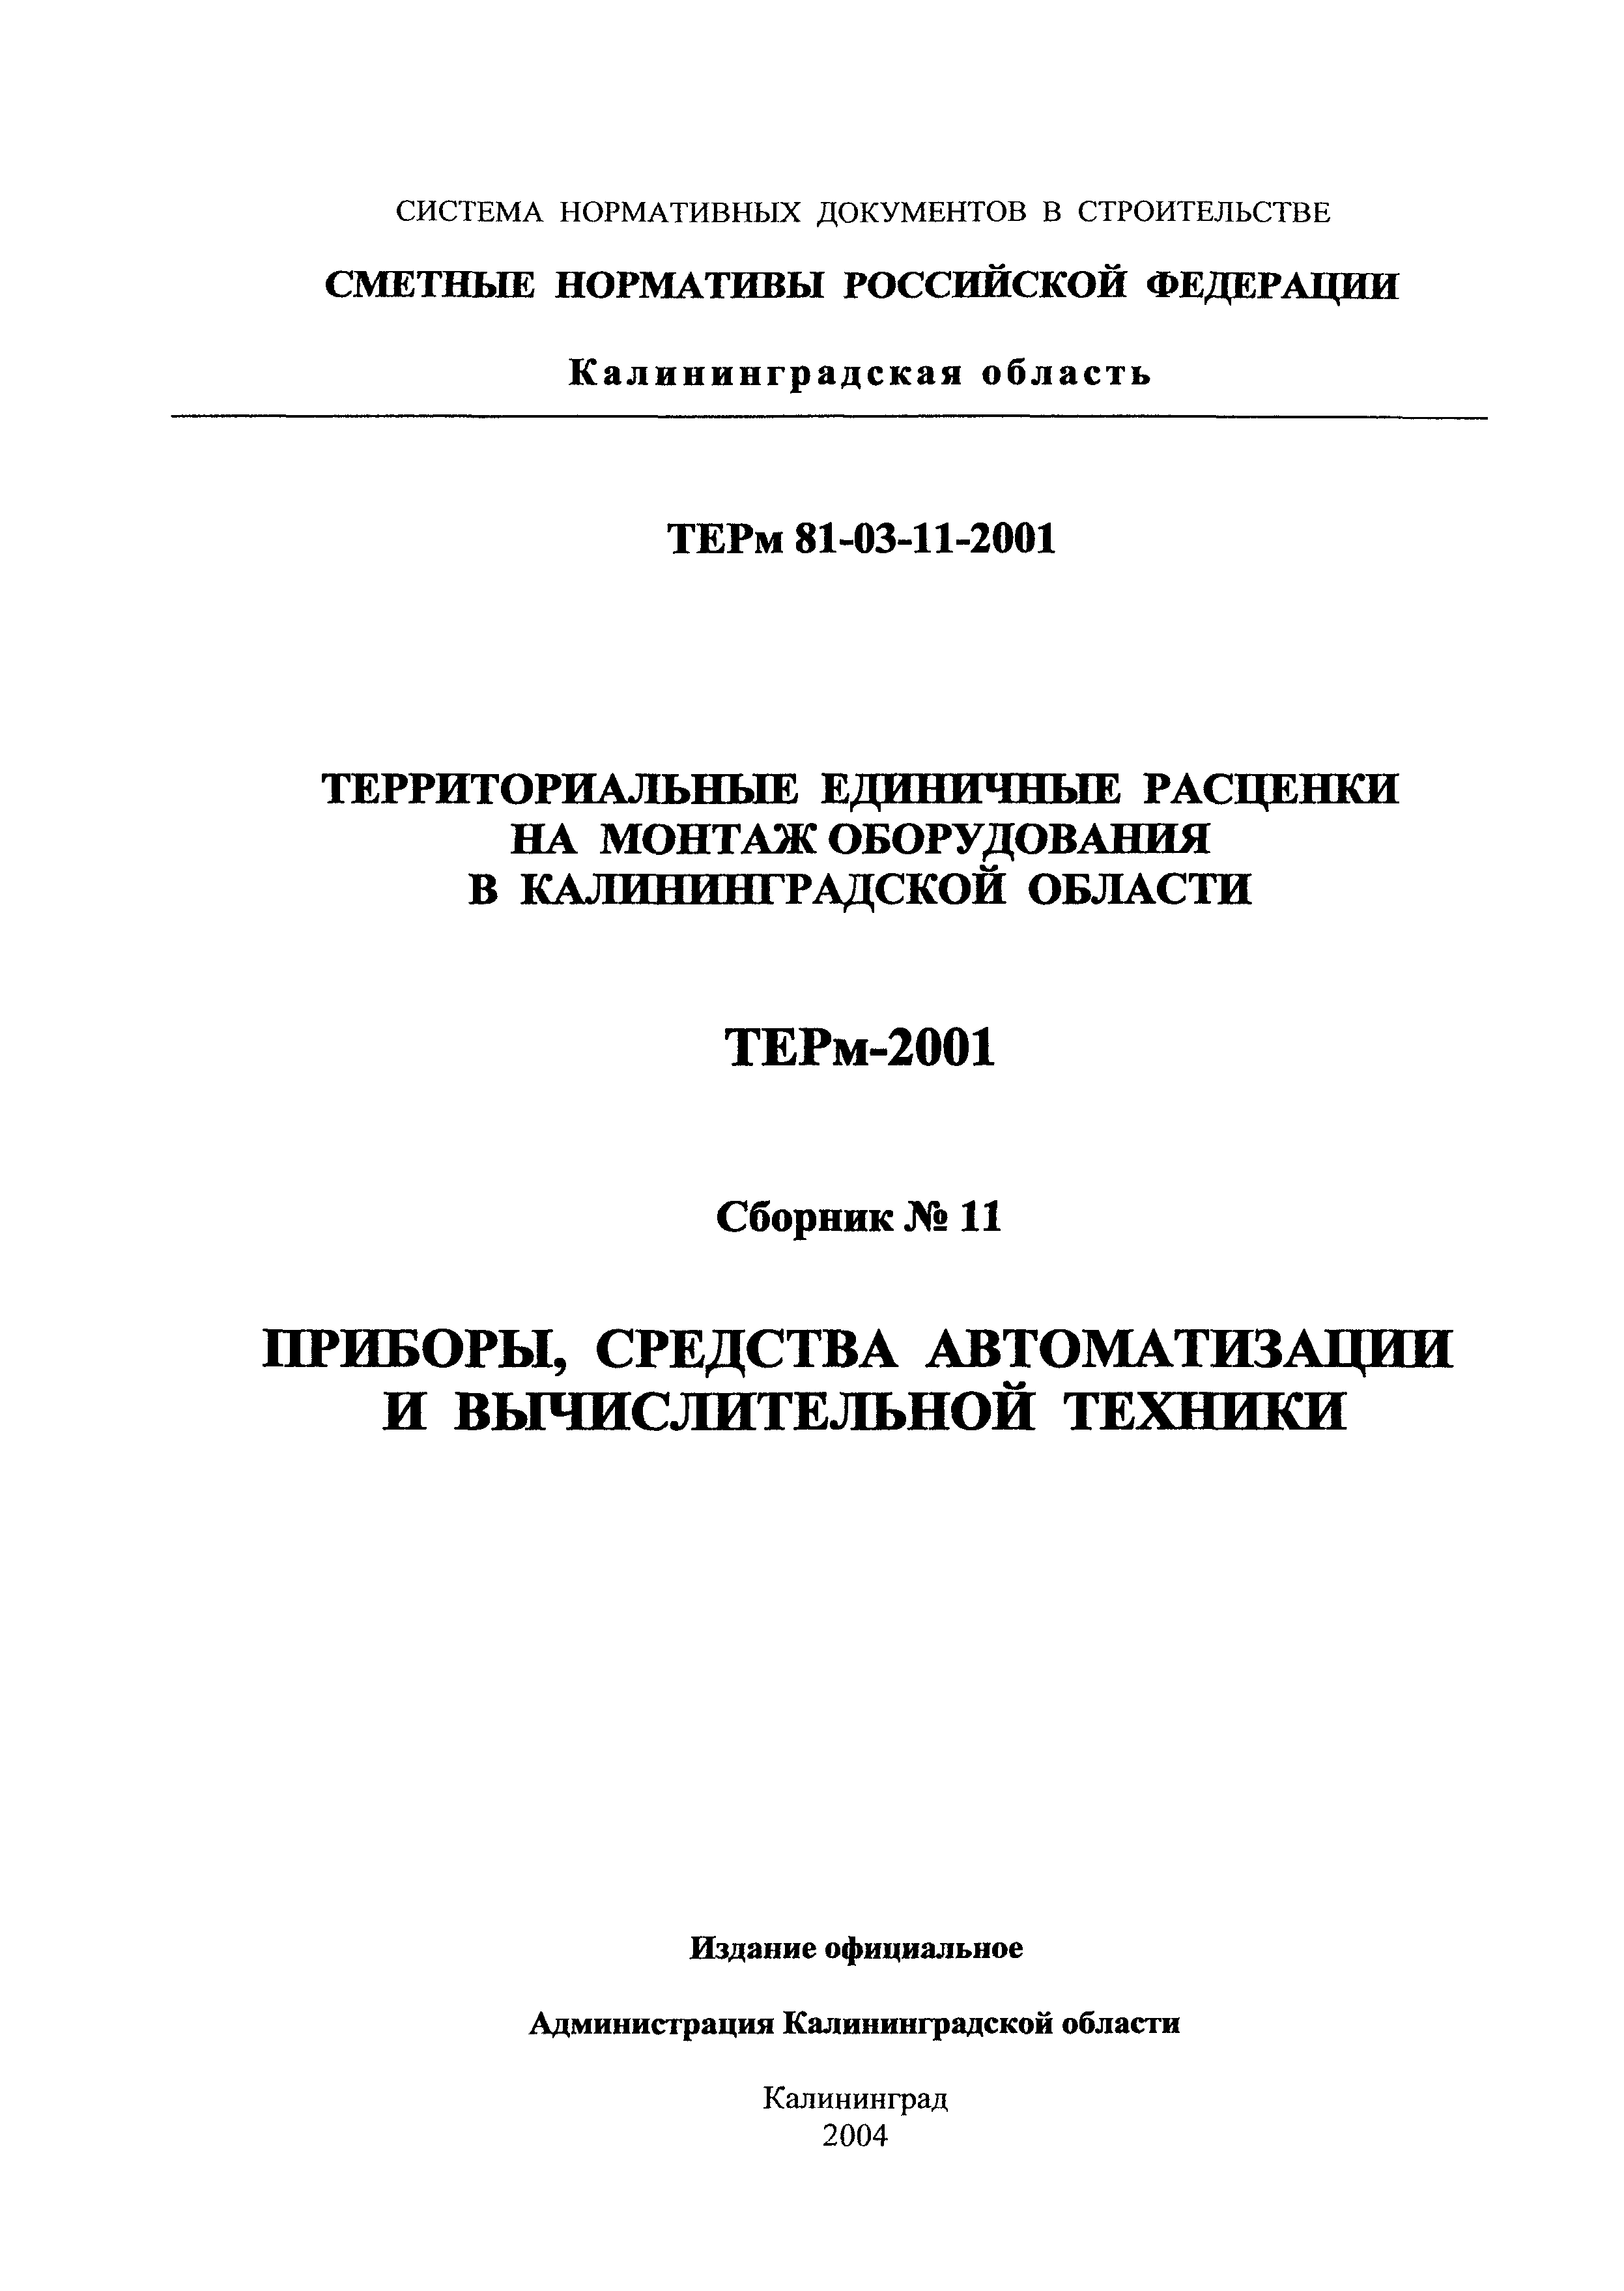 ТЕРм Калининградская область 2001-11